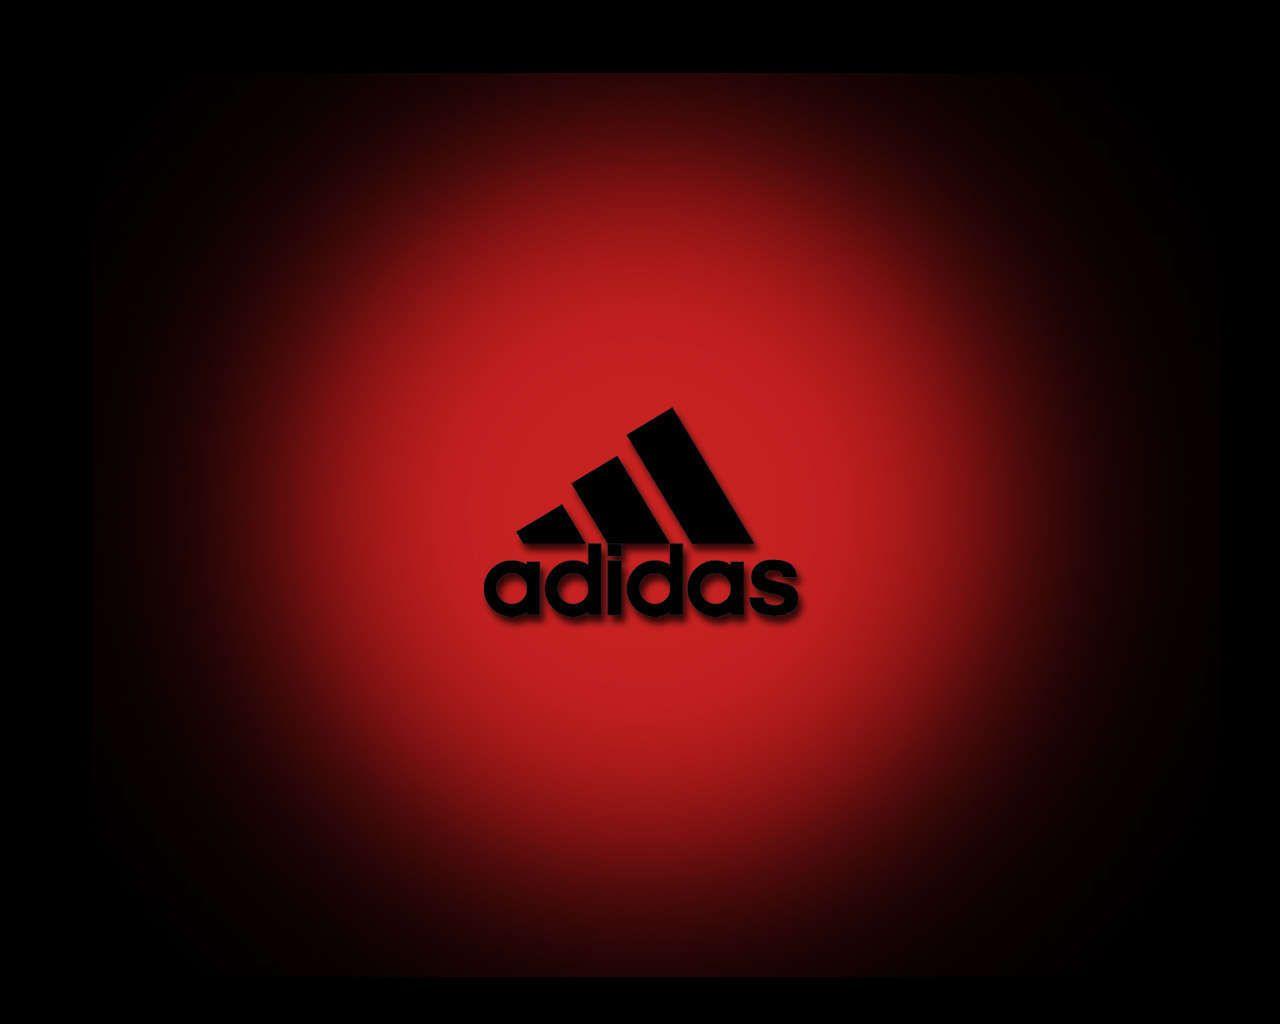 Red Addidas Logo - Red adidas Logos